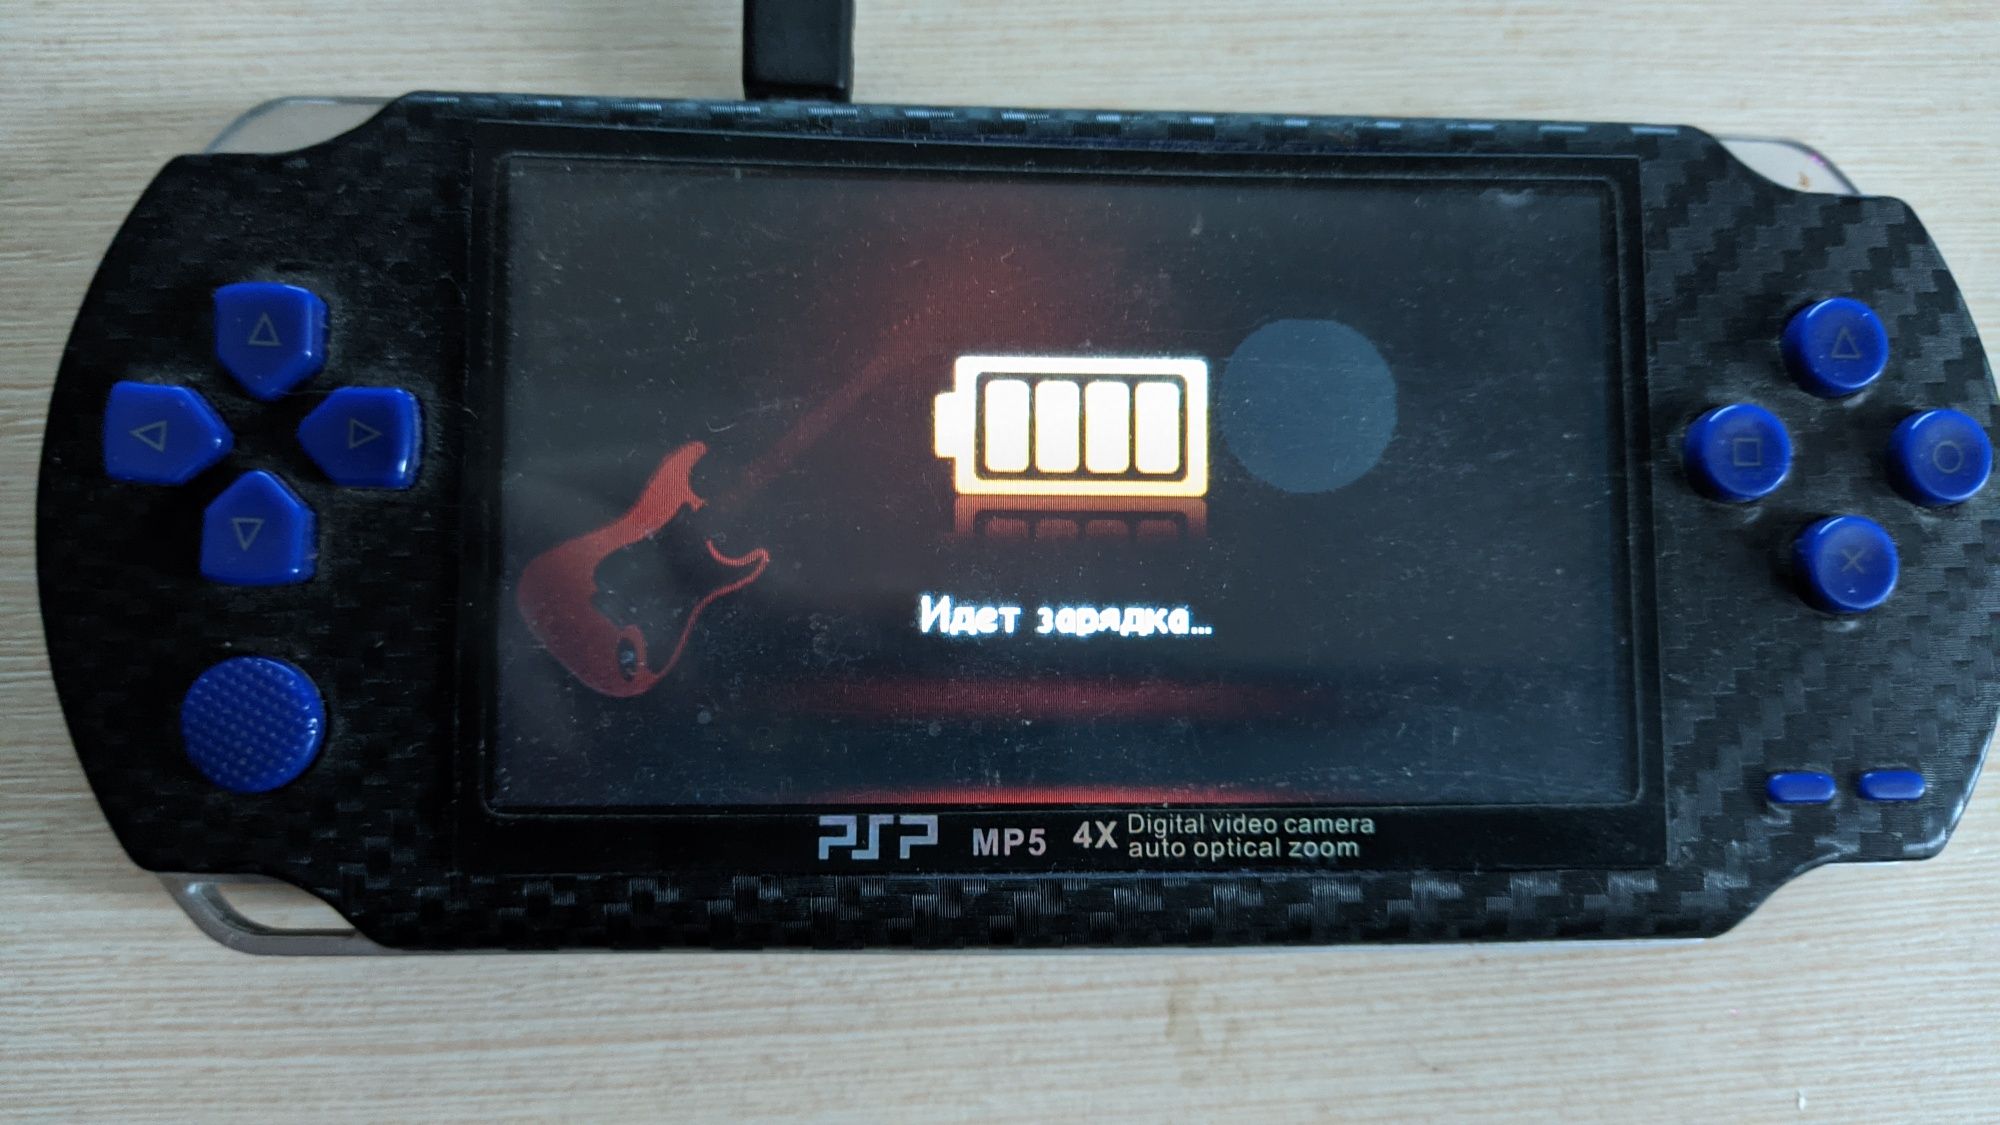 PSP MP5 игровая приставка